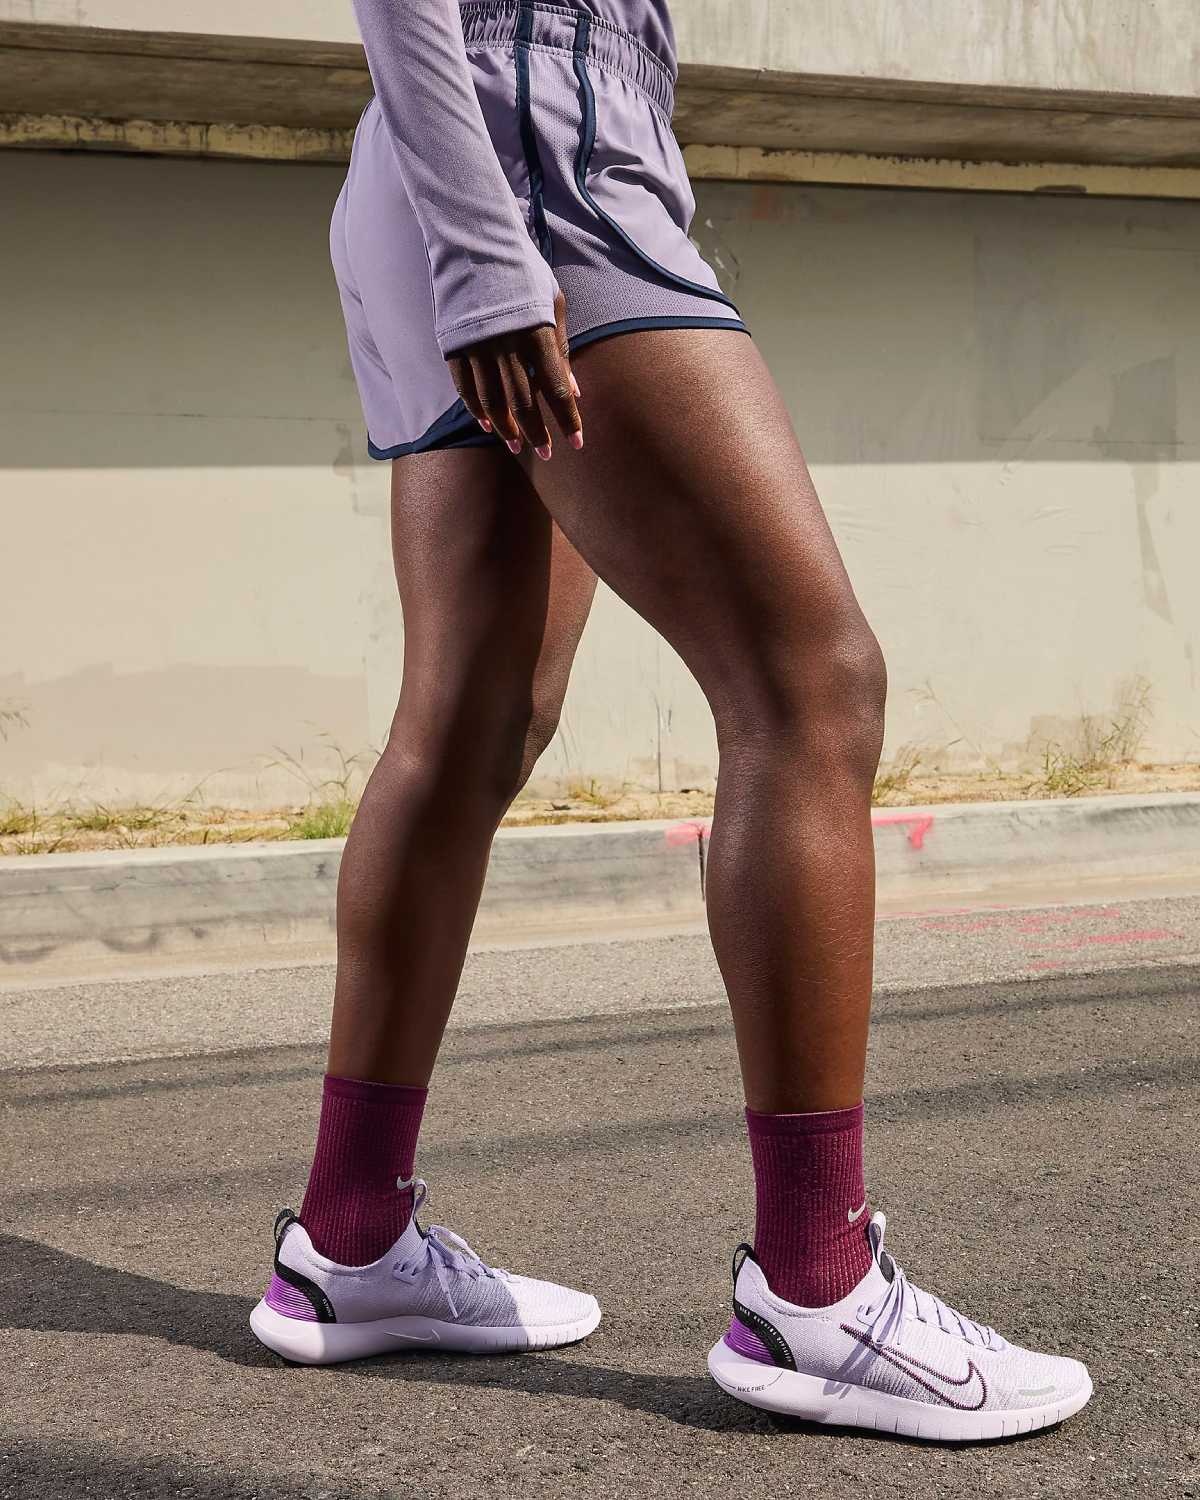 Ces 6 chaussures Nike pour femmes sont parfaites pour la marche et allient confort et style